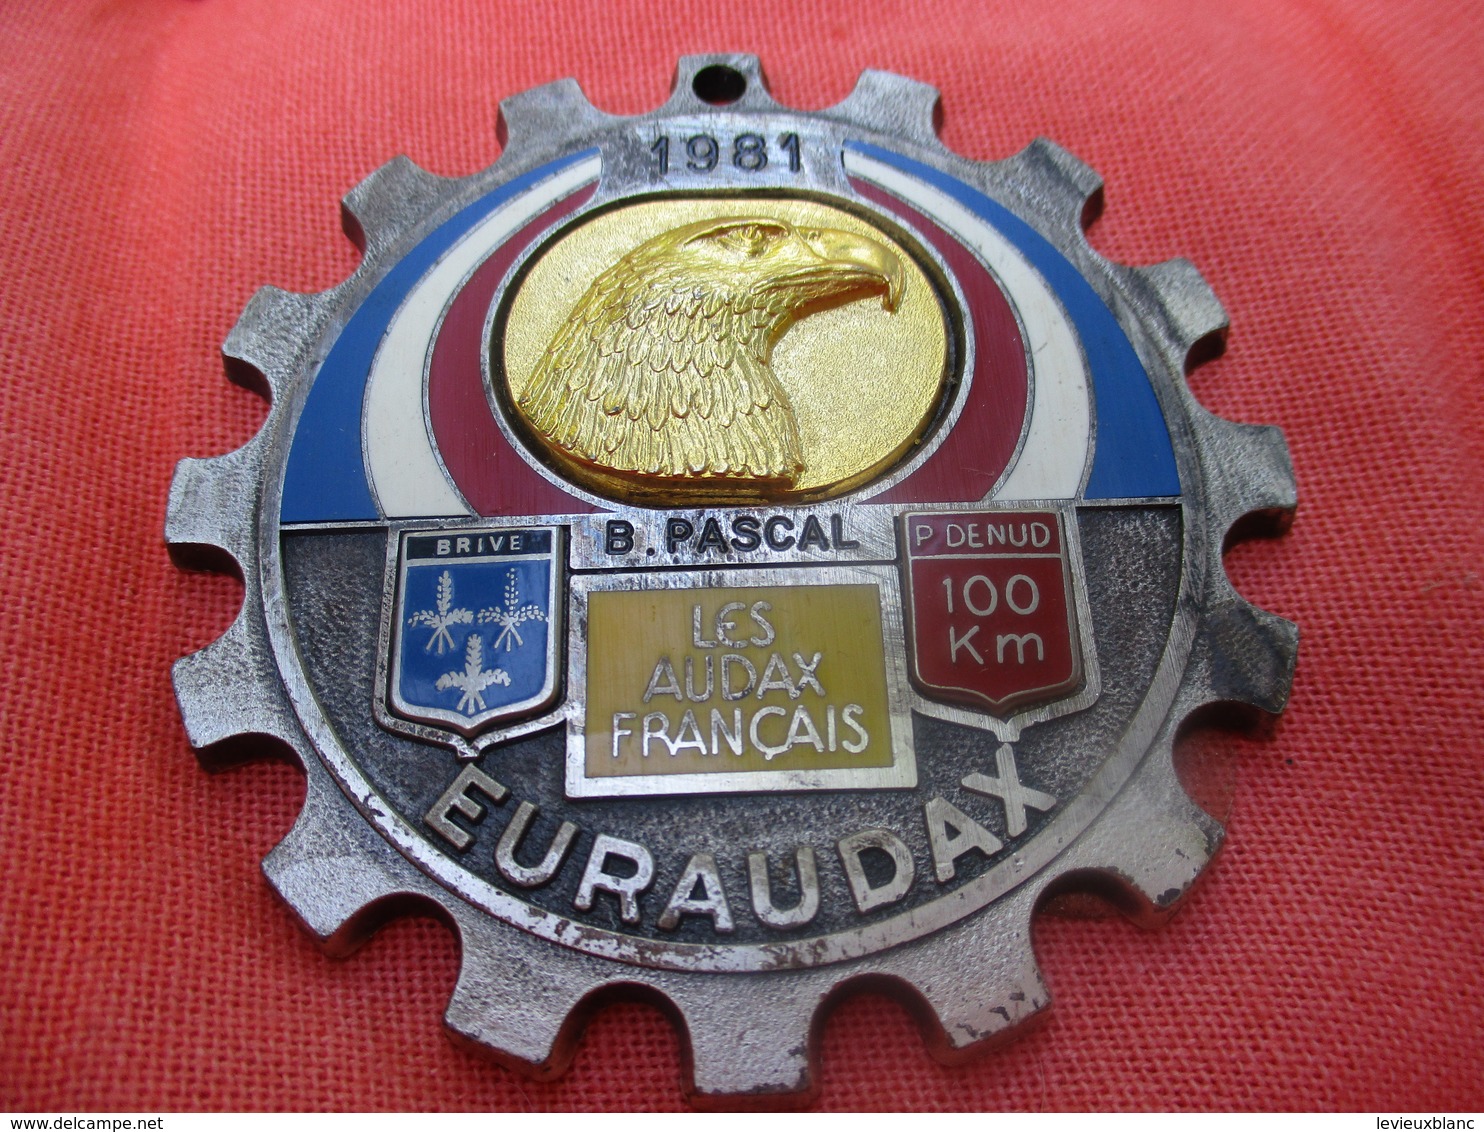 Médaille De Sport/Cyclisme/ EURAUDAX/100 KM P Denud/ Tête D'Aigle/ BRIVE/Les Audax Français/1981    SPO290 - Ciclismo